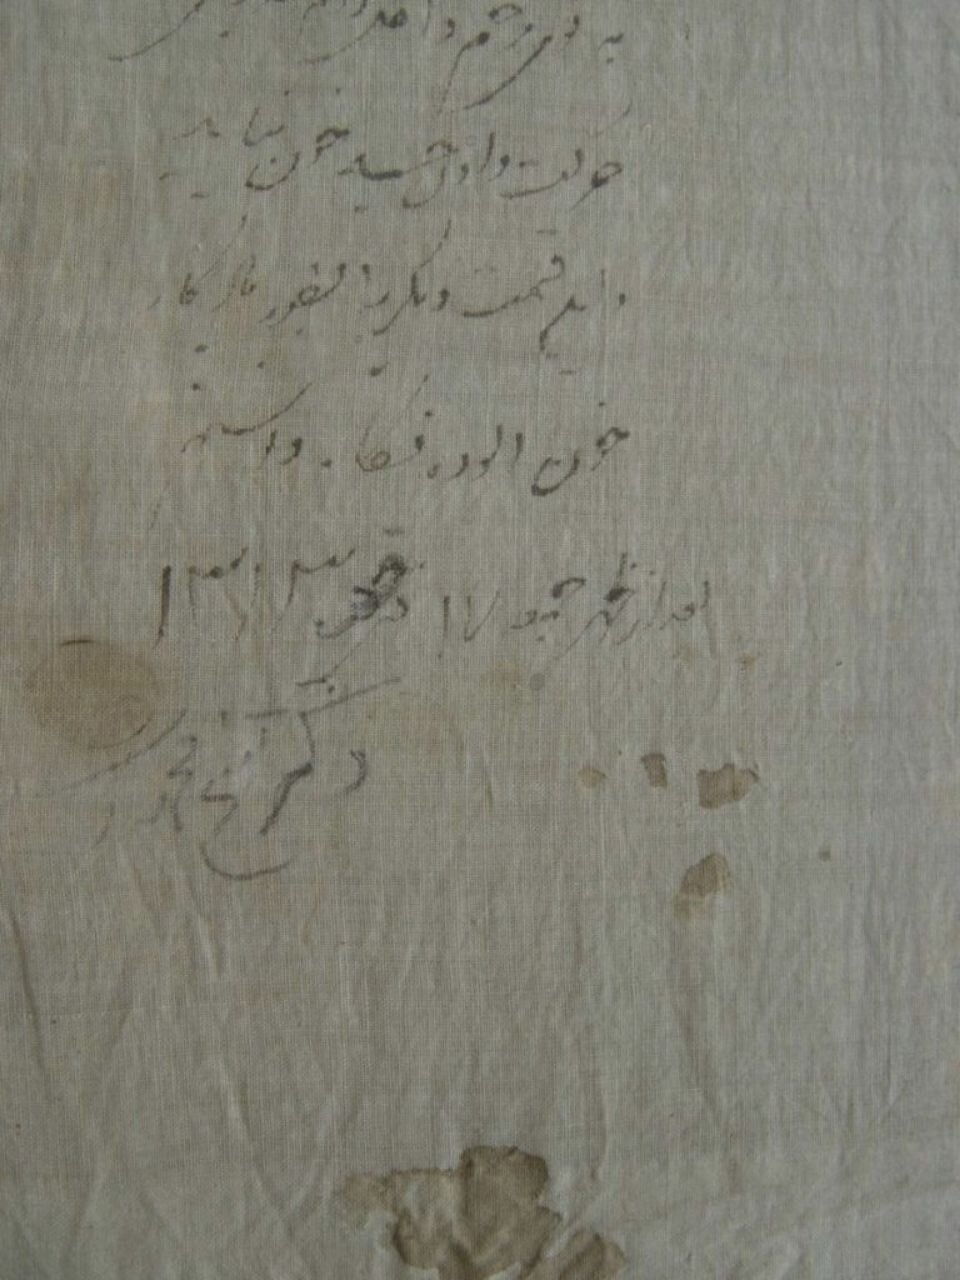 (عکس) نوشته «یادگاری» پزشک ناصرالدین شاه روی دستمال خونین به جامانده از ترور او